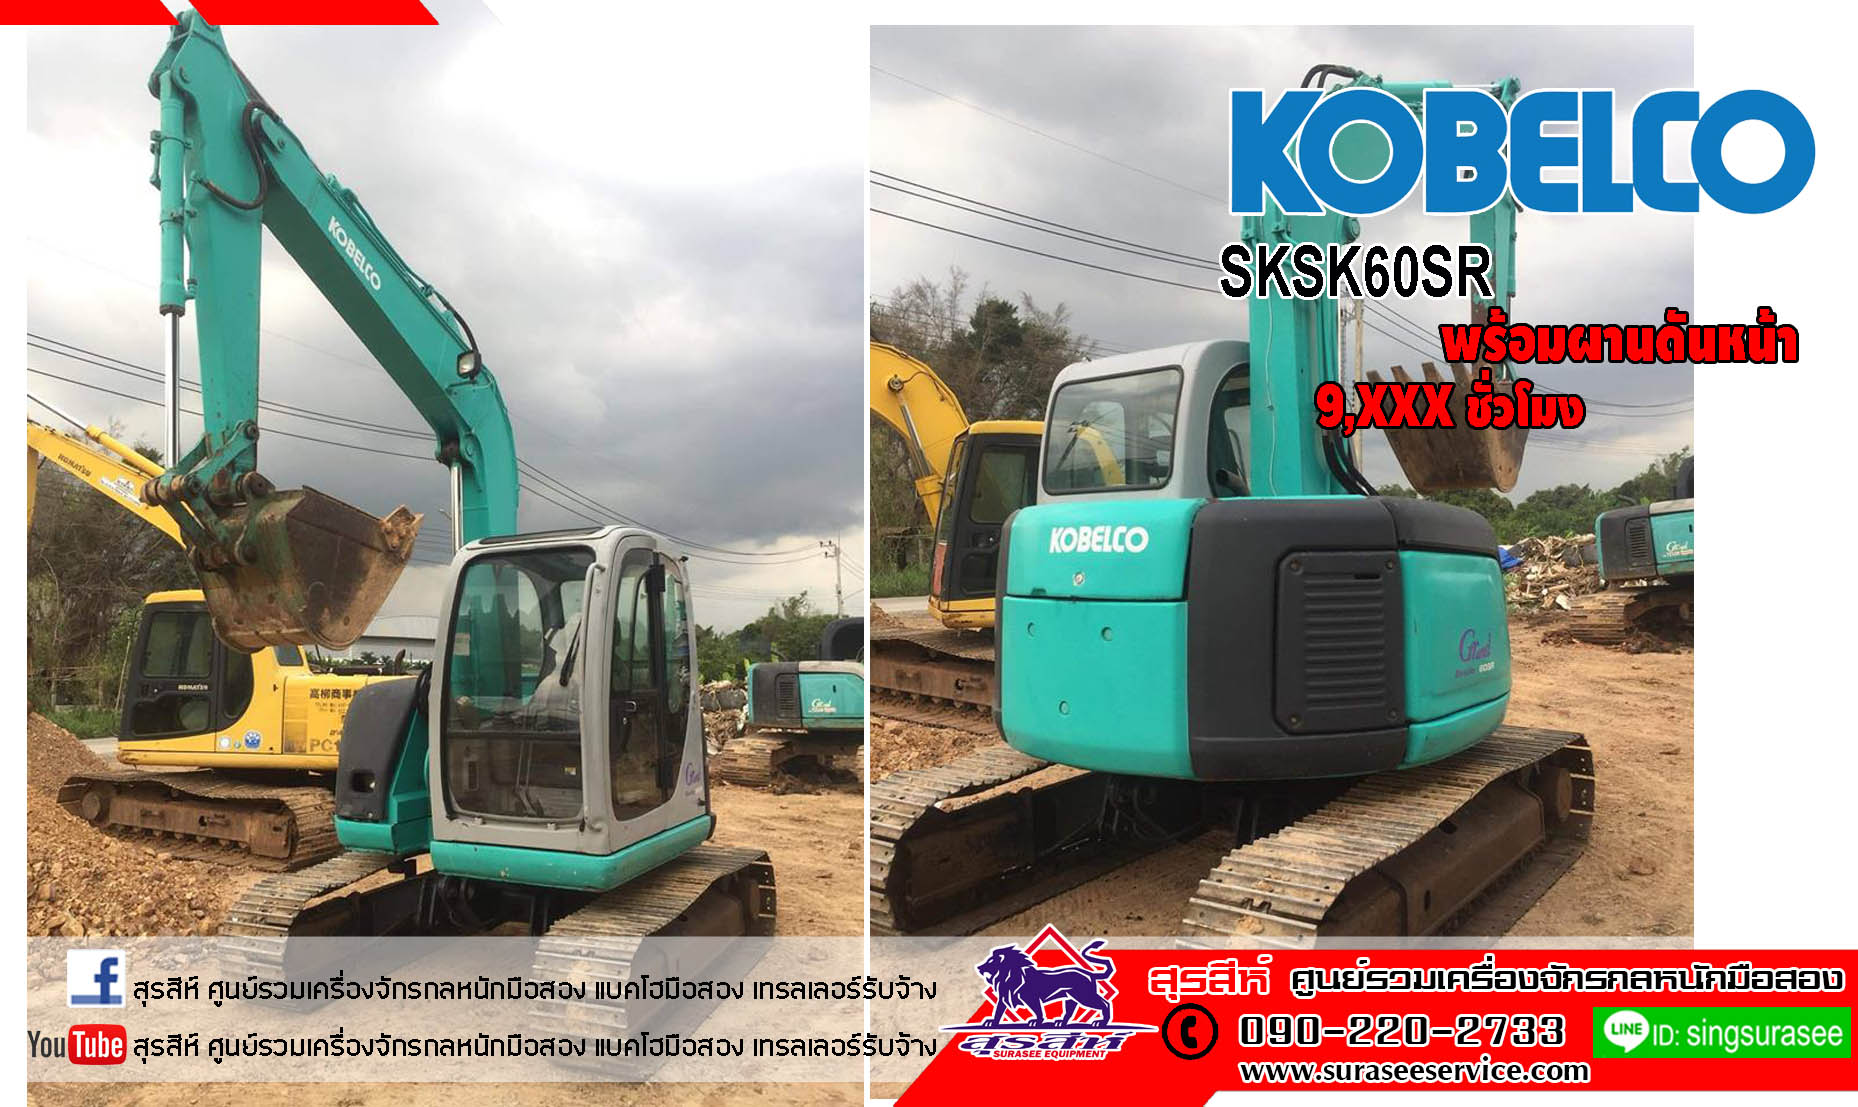 ขายรถขุด KOBELCO SK60SR พร้อมผานดันหน้า เก่านอกผ่านการใช้งานในไทย